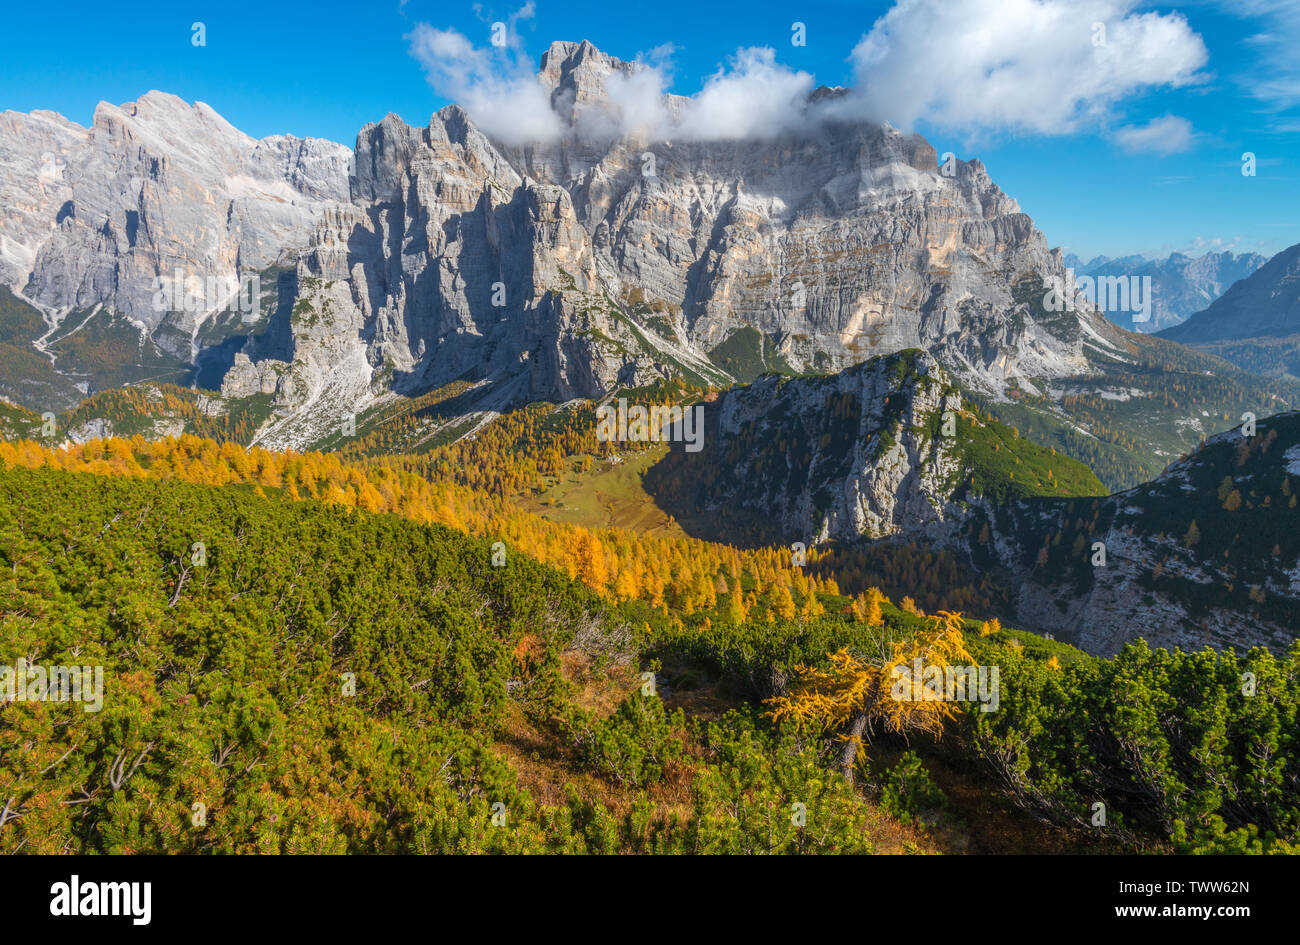 Contraste frappant entre les conifères et les mélèzes jaune dans les Alpes italiennes. Moiazza sur la montagne avec des couleurs d'automne. Feuillage en Italie. Banque D'Images